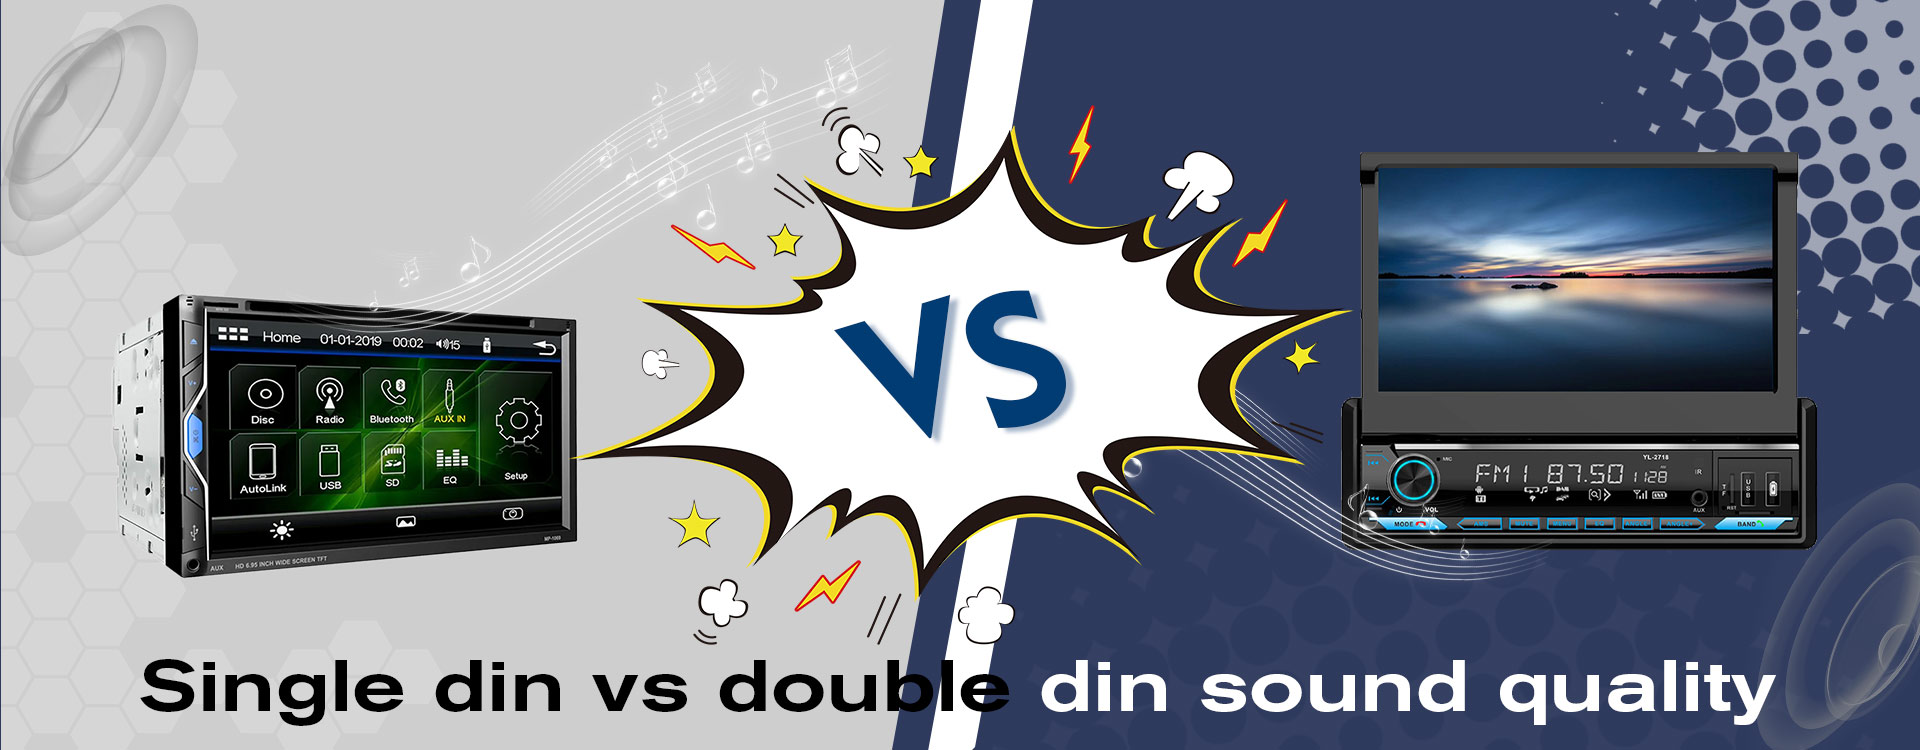 Calidad de sonido single din vs doubdin